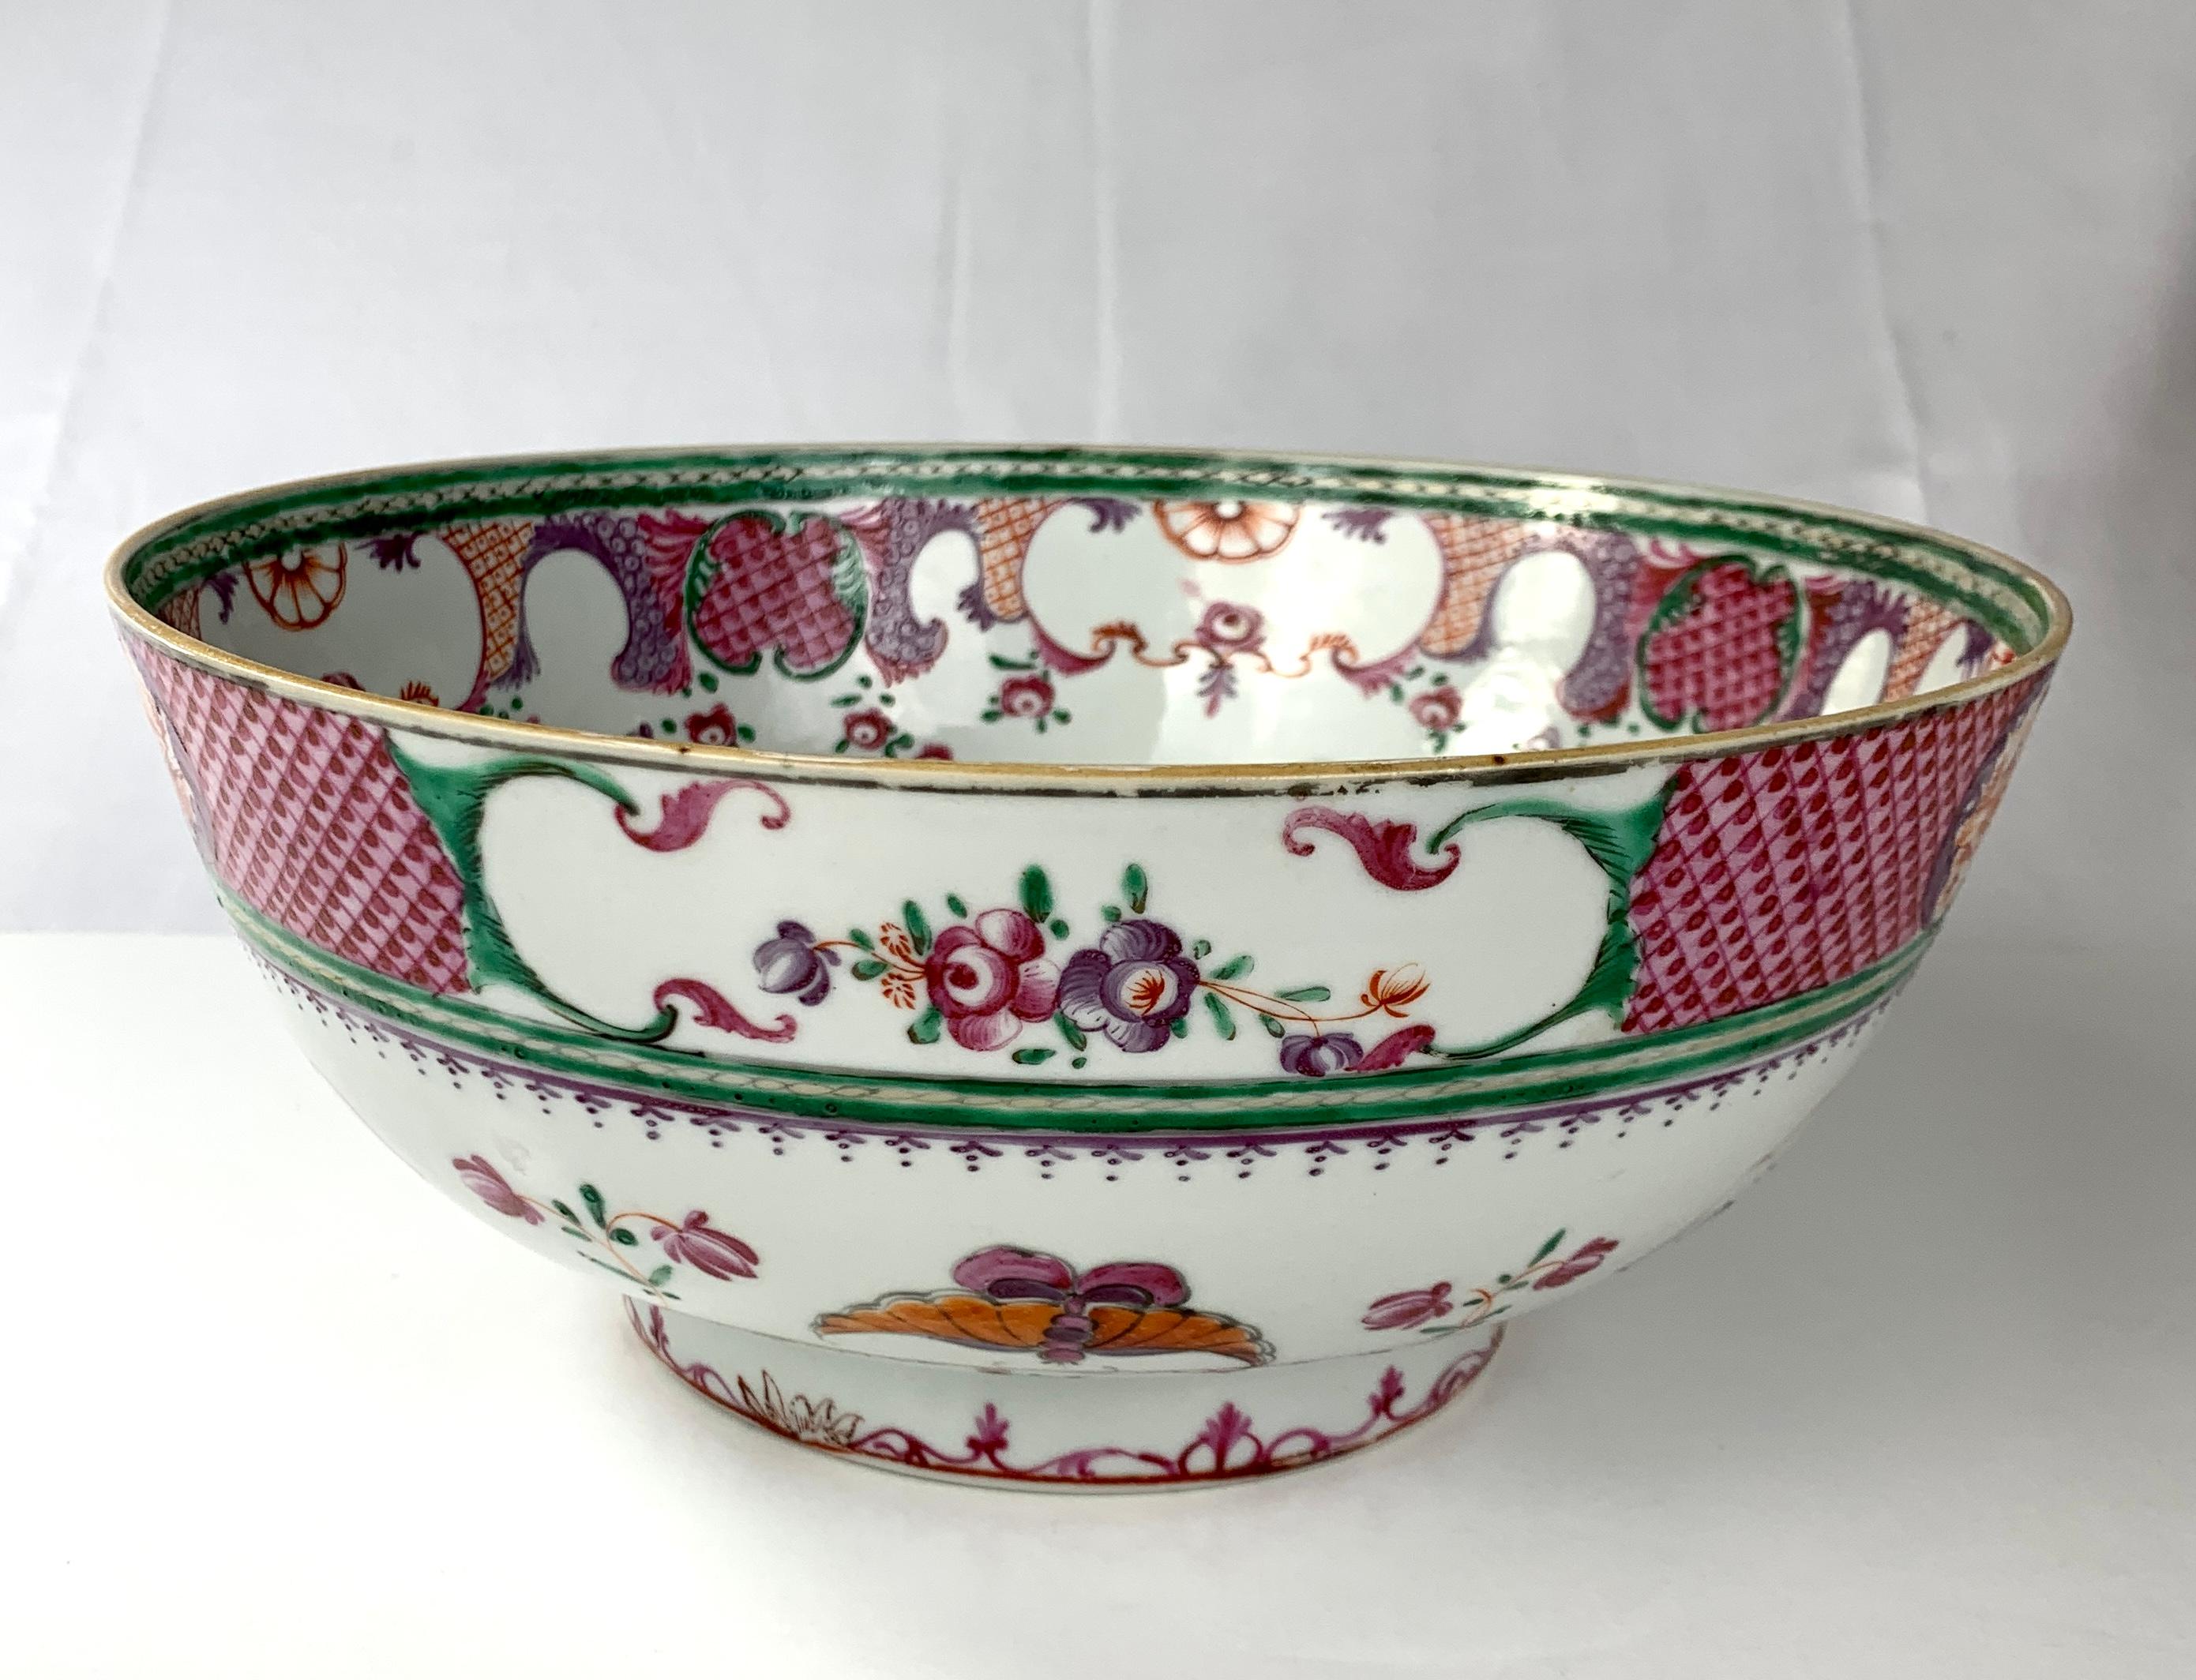 Diese hübsche Schale aus chinesischem Porzellan wurde von Hand in Famille Rose-Farbtönen von tiefem Purpur, Orange und Grün bemalt.
Die Außenseite dieser schönen Schale weist ein oberes Band mit violetten Rautenmustern auf, in das Paneele mit